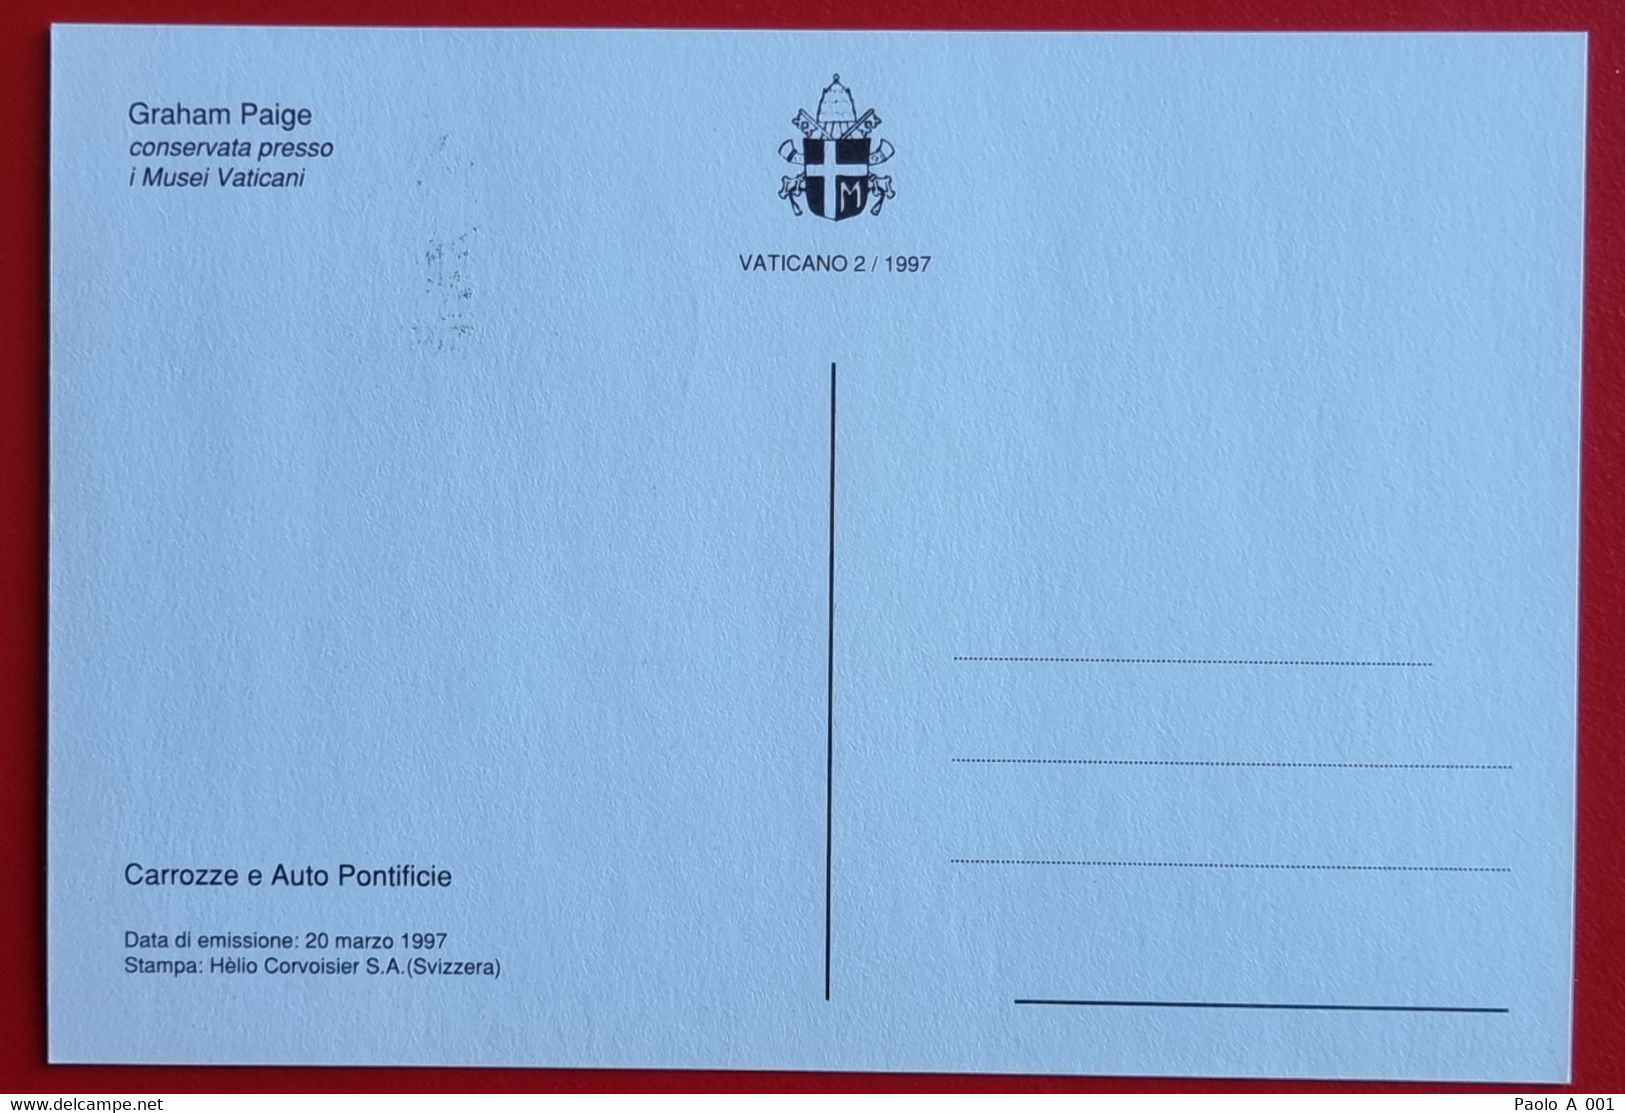 VATICANO VATIKAN VATICAN 1997 CAROZZE AUTO PONTIFICE POPE COACH CARS LIMOUSINE MAXIMUM-CARD GRAHAM PAIGE - Covers & Documents